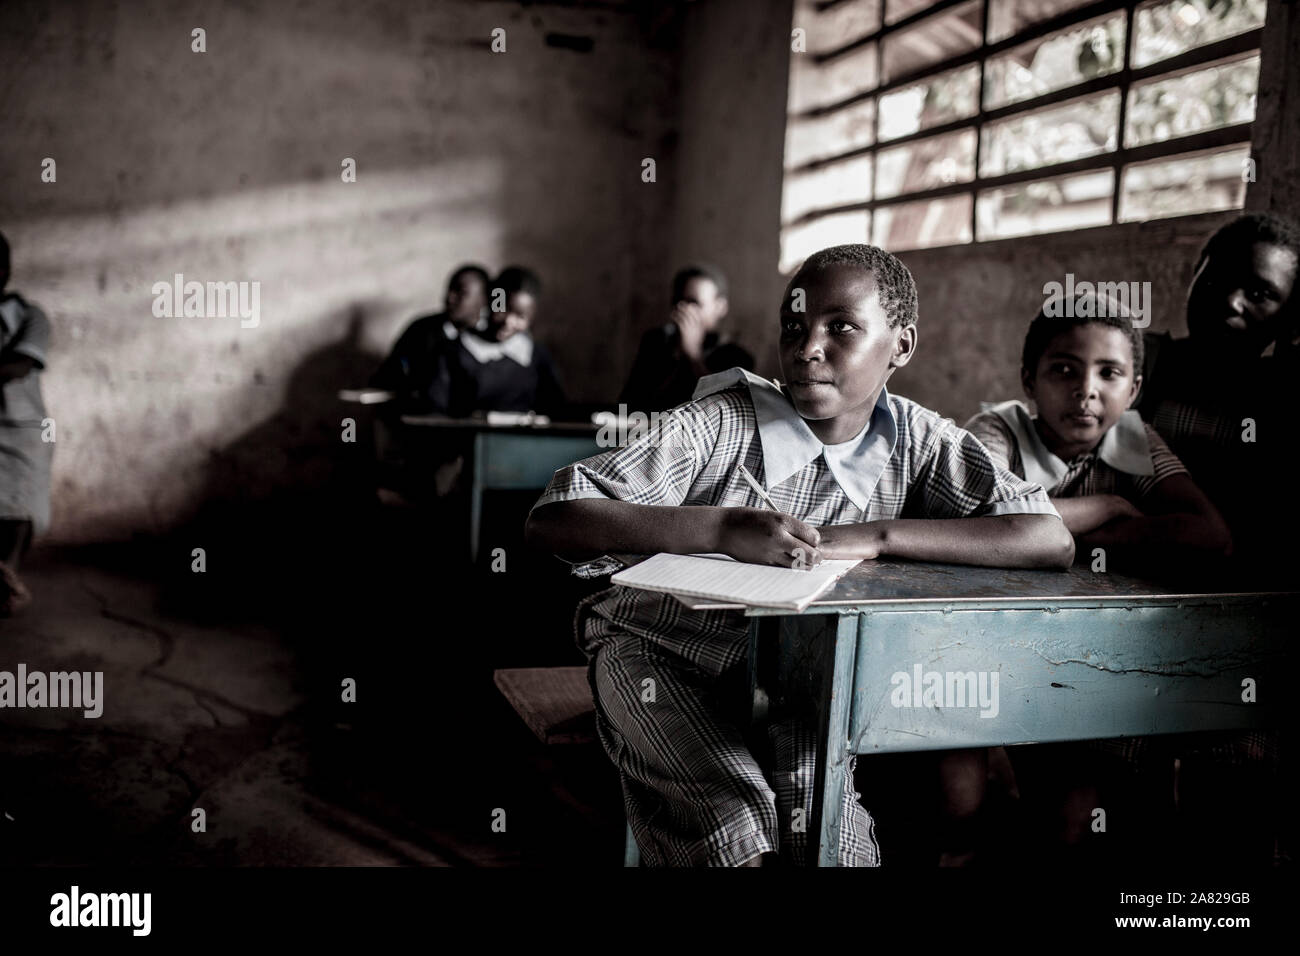 NAIROBI, KENYA, 10 septembre 2014 : étude des filles non identifiés dans une classe simple près de Nairobi, Kenya. Banque D'Images